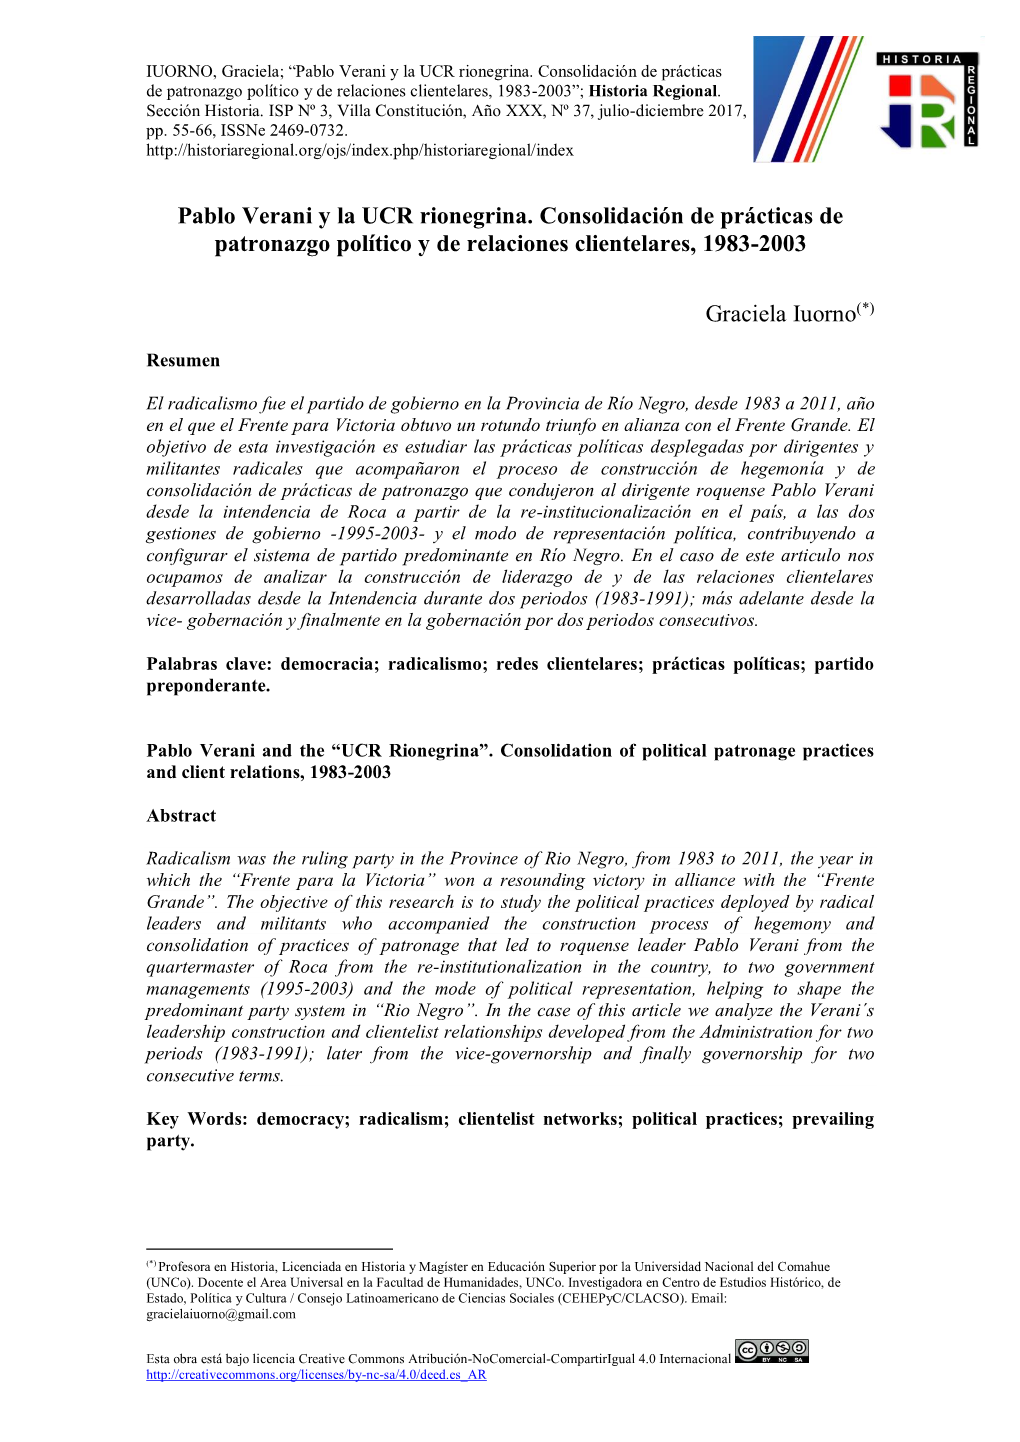 Pablo Verani Y La UCR Rionegrina. Consolidación De Prácticas De Patronazgo Político Y De Relaciones Clientelares, 1983-2003”; Historia Regional